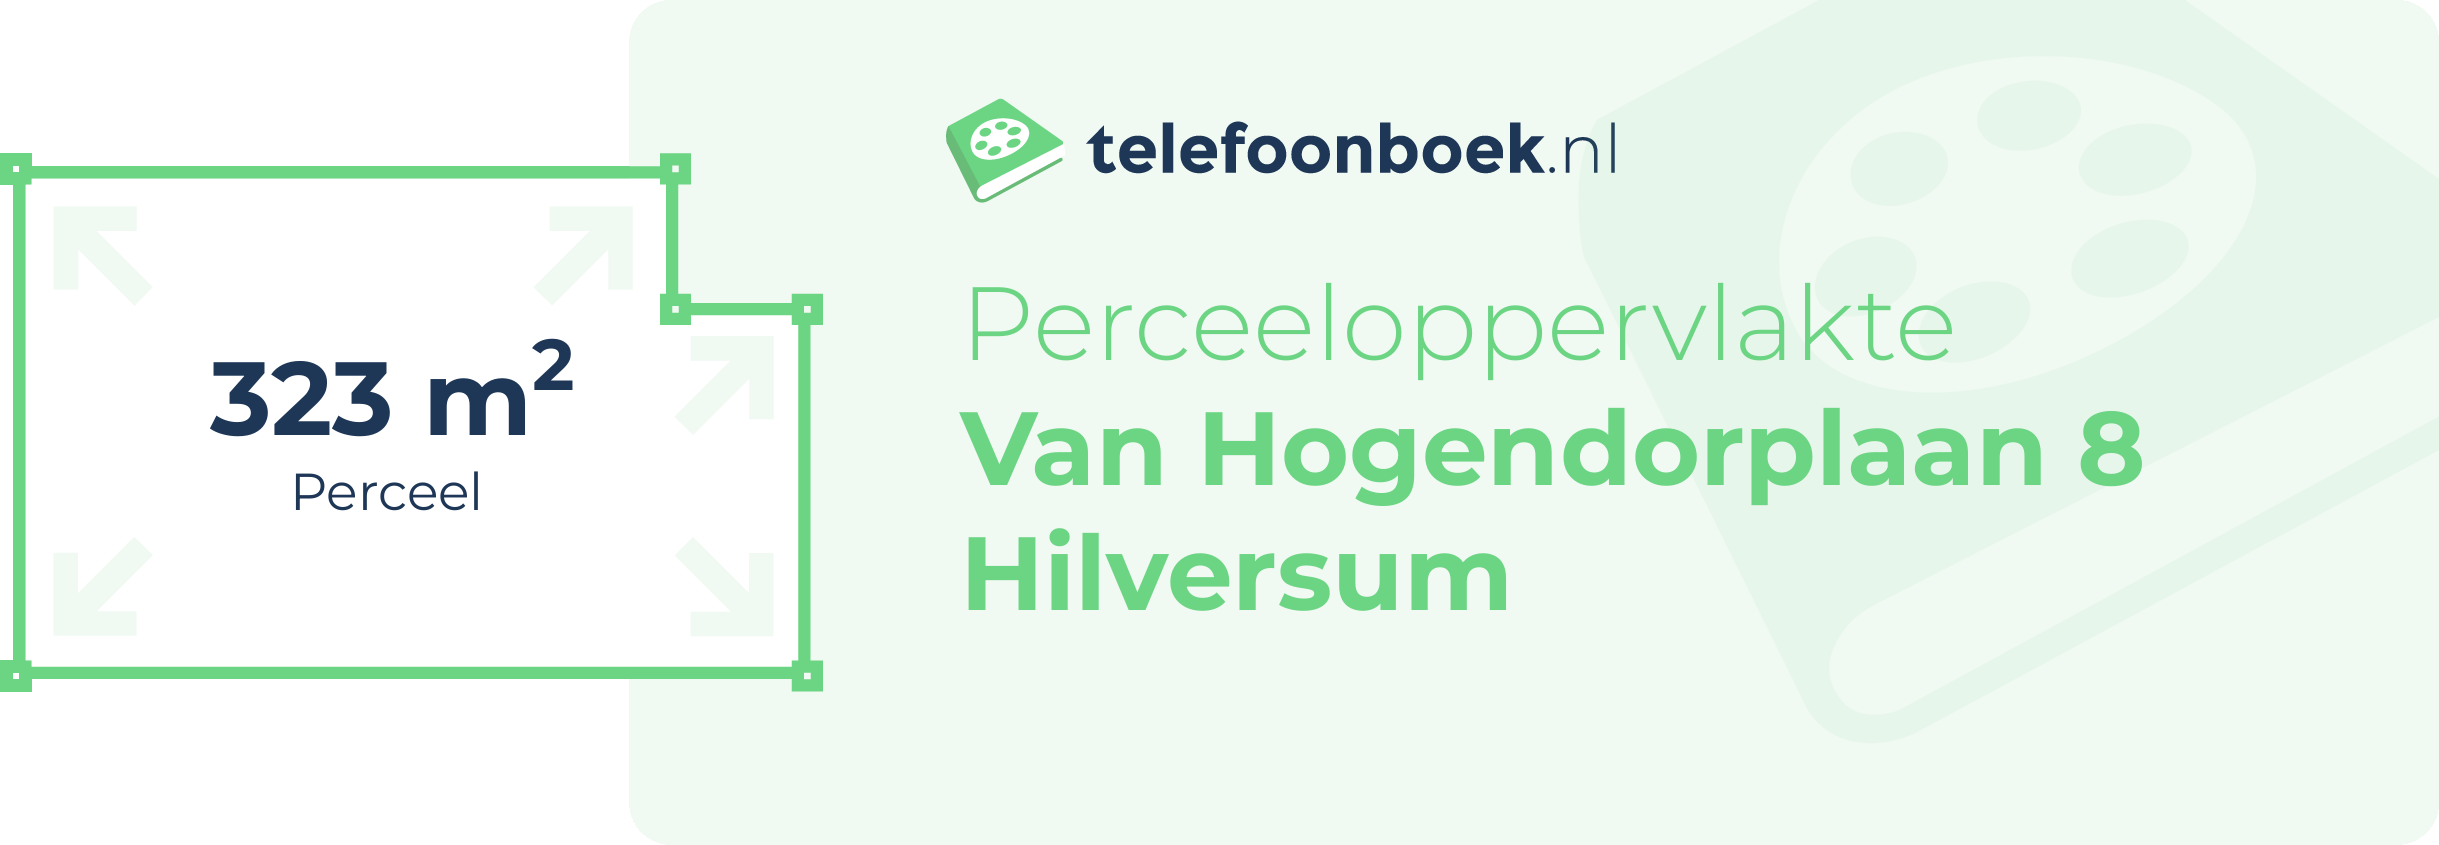 Perceeloppervlakte Van Hogendorplaan 8 Hilversum